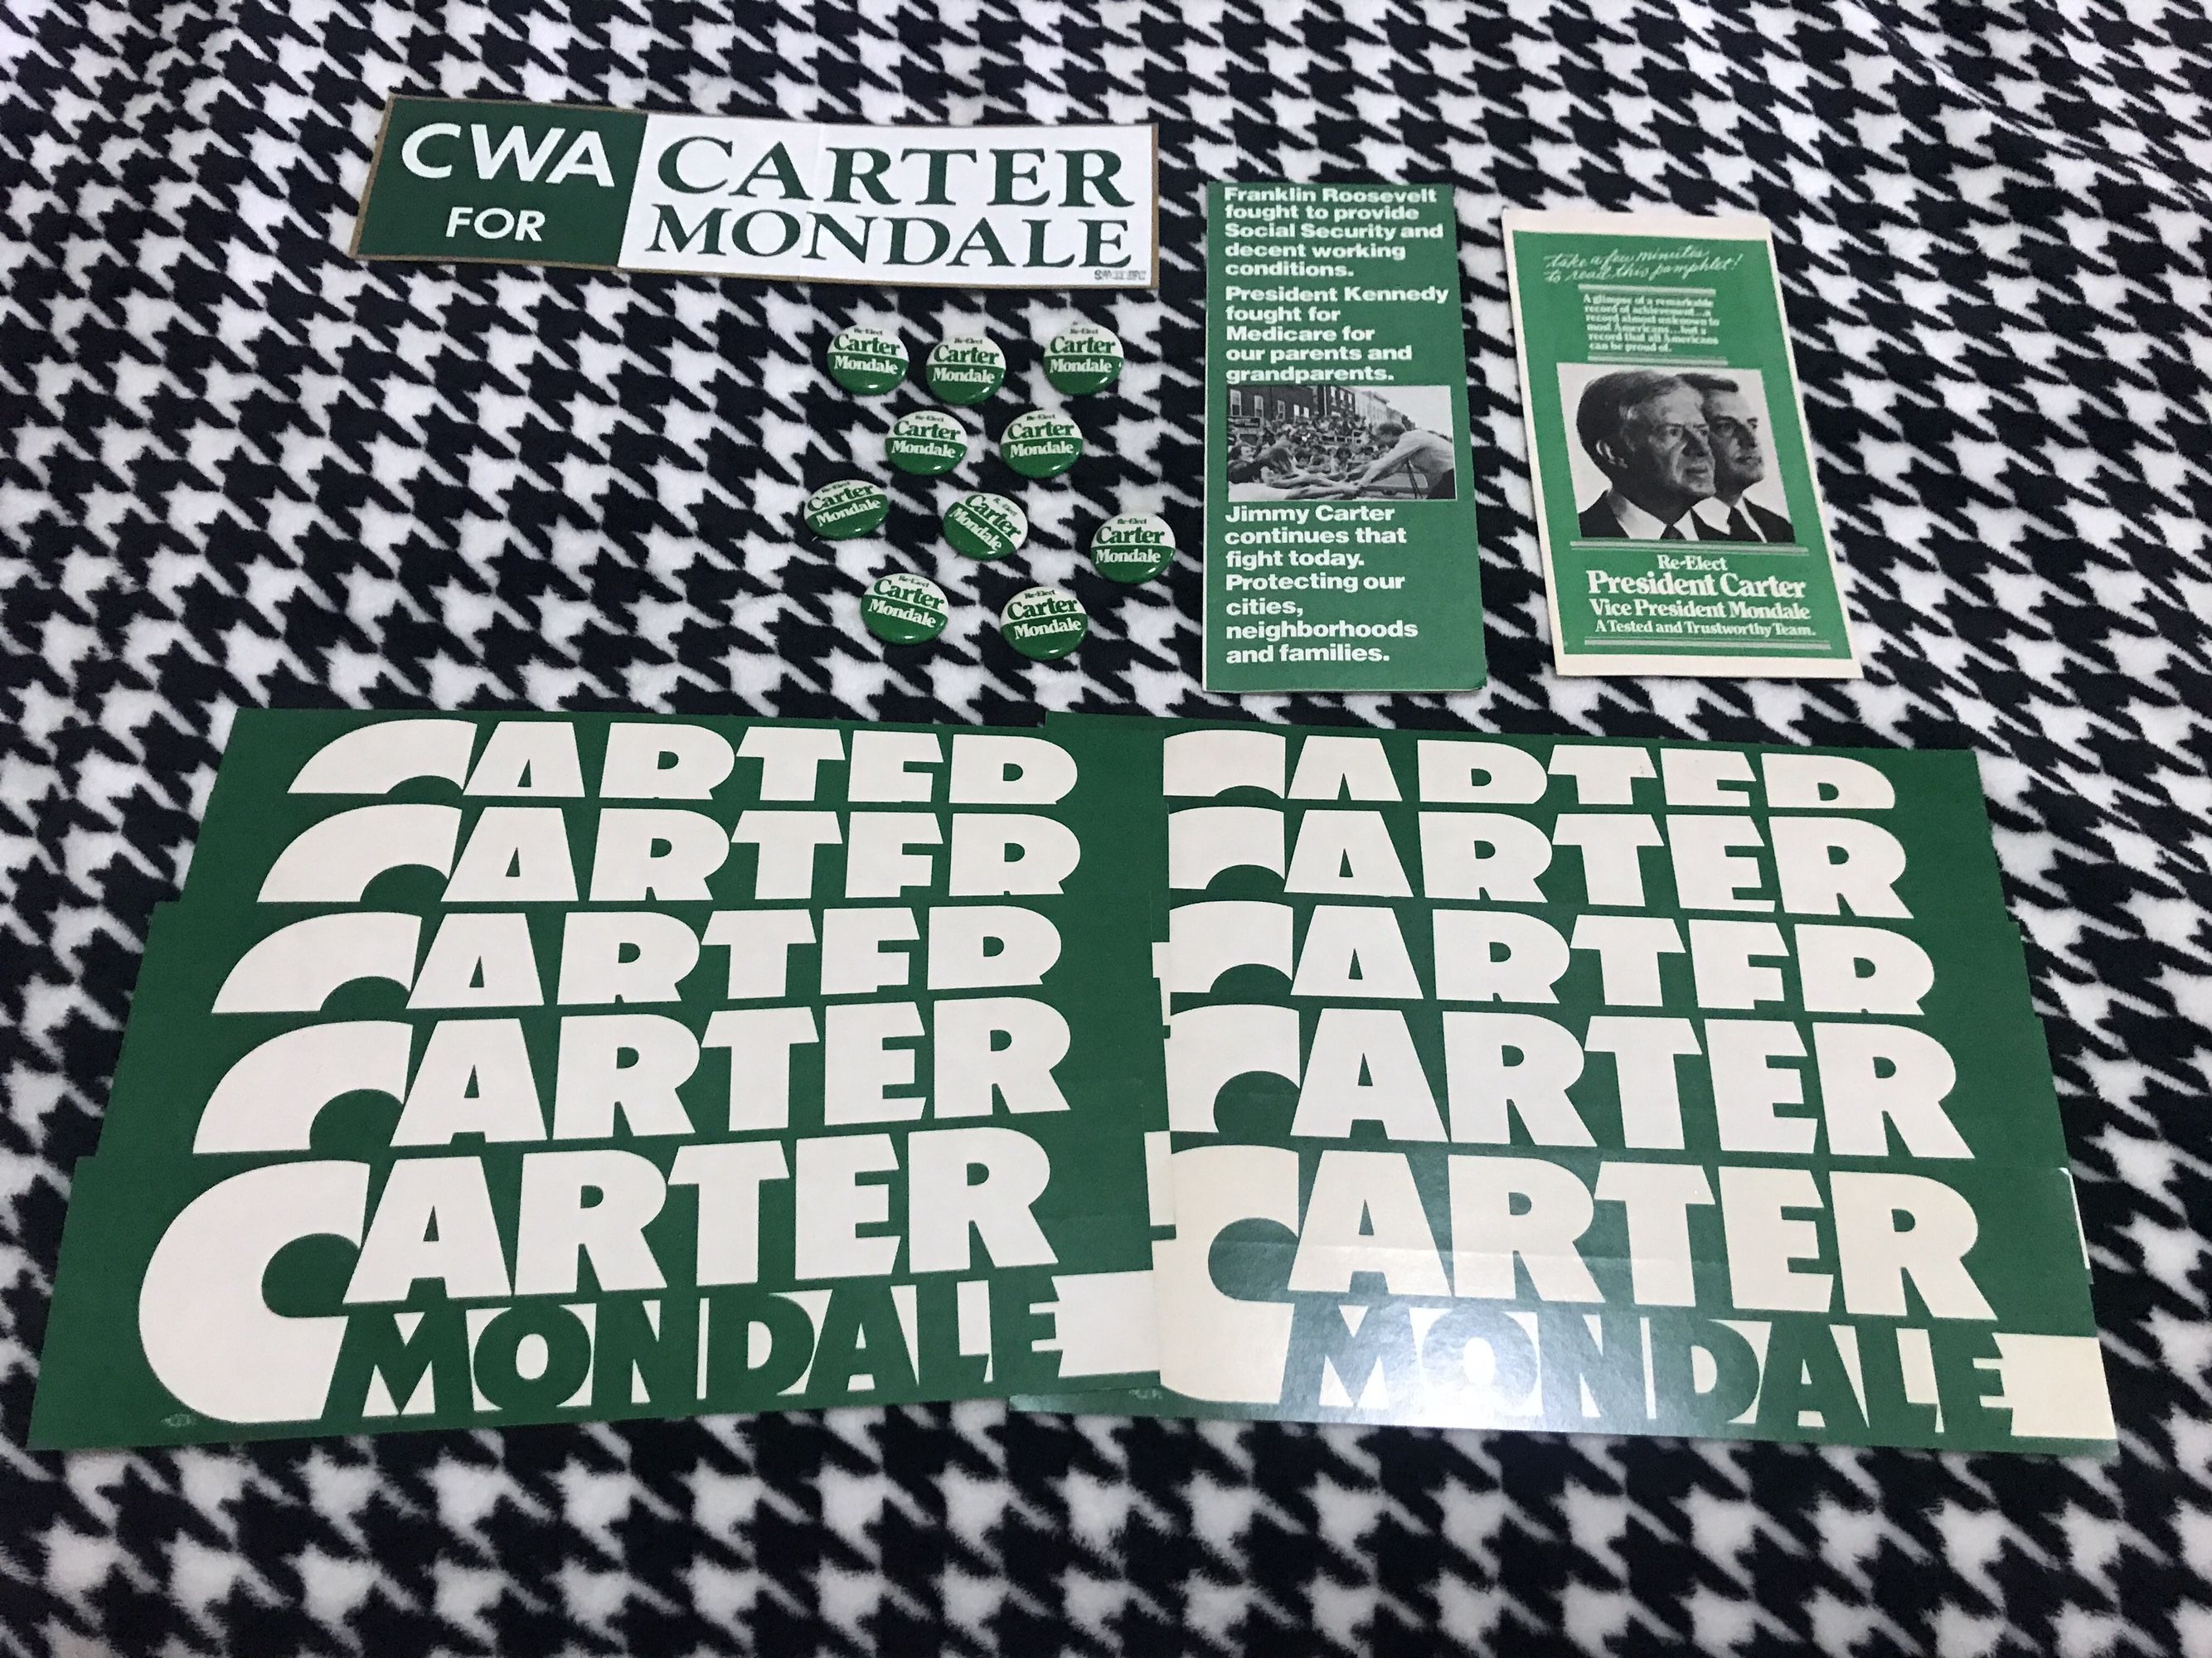 Carter Mondale Campaign Memorabilia